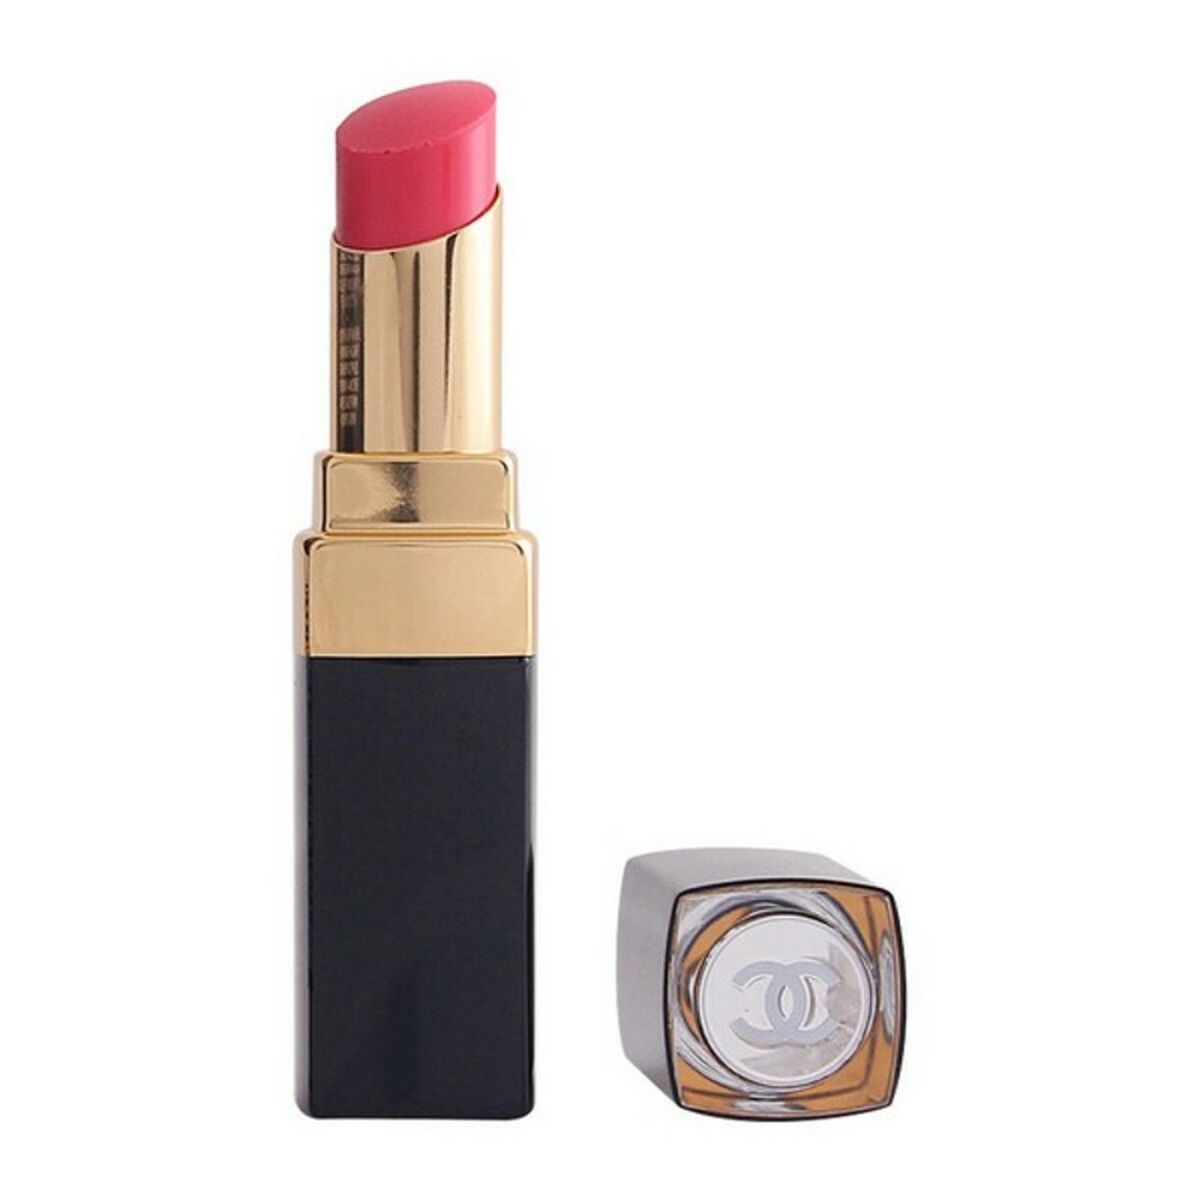 Lipstick Rouge Coco Chanel – Bricini Cosmetics